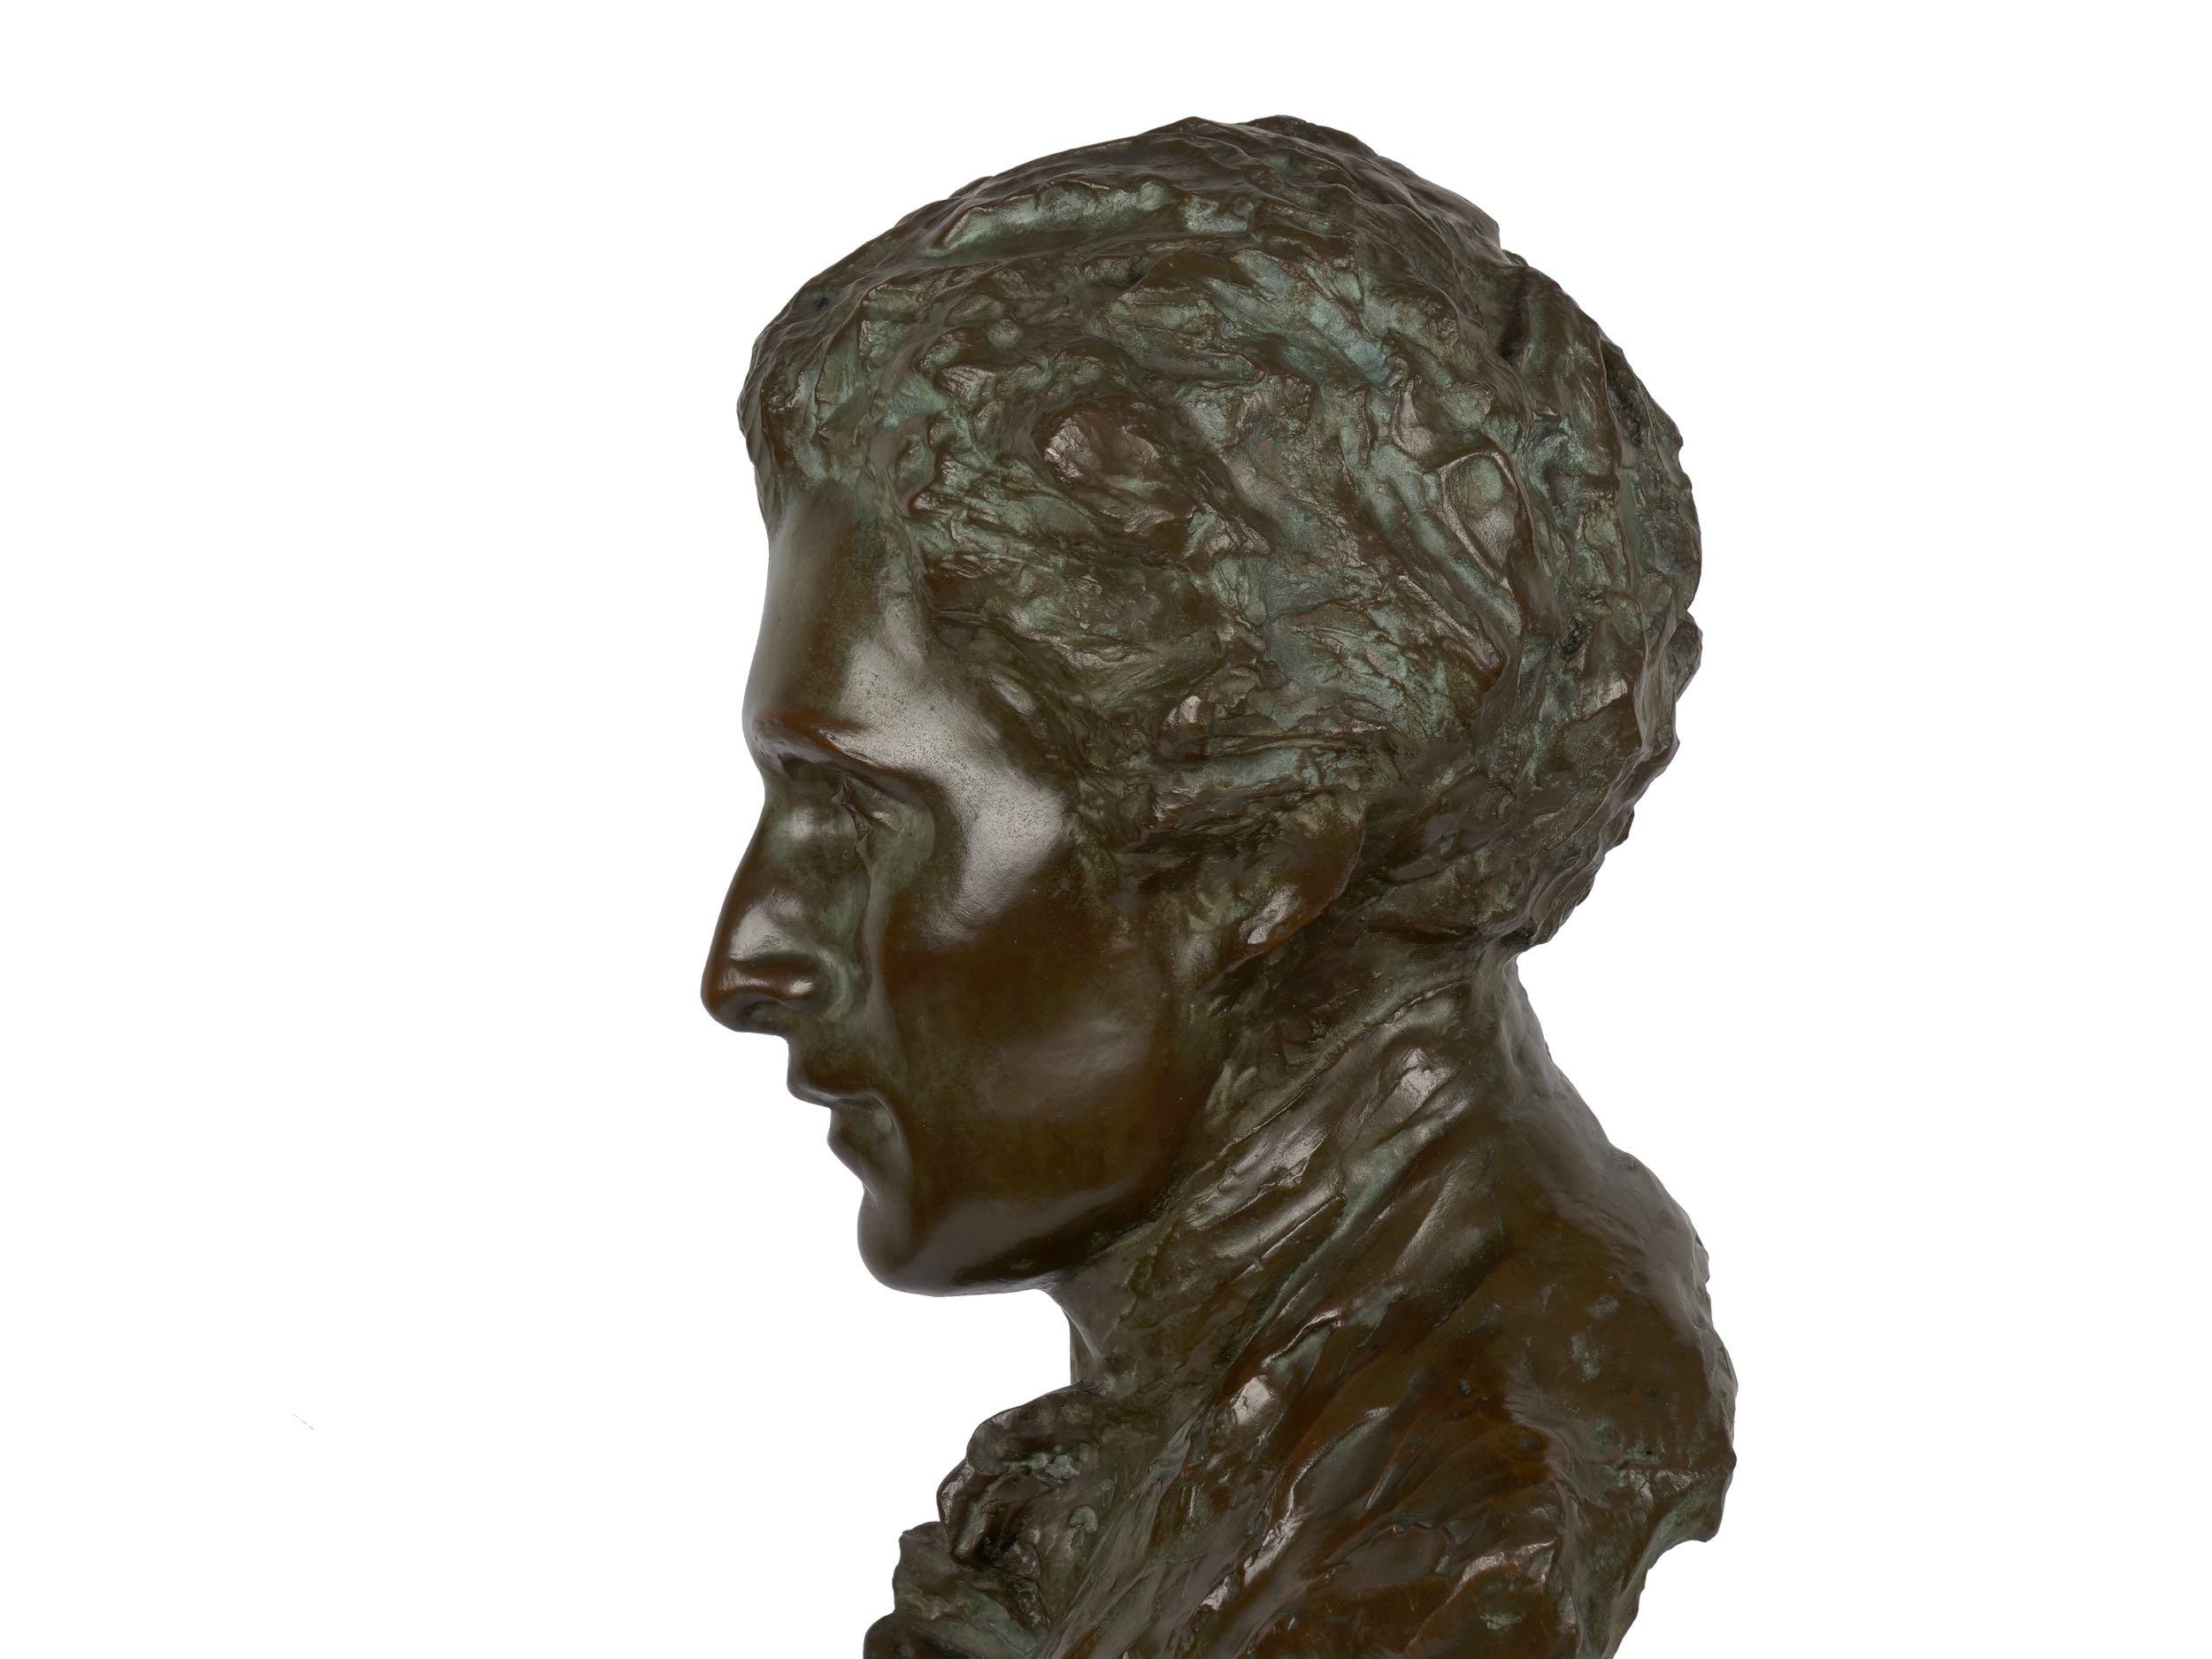 American Bronze Sculpture “Bust of Mozart” by Edith Lichtenstein & Gorham  10